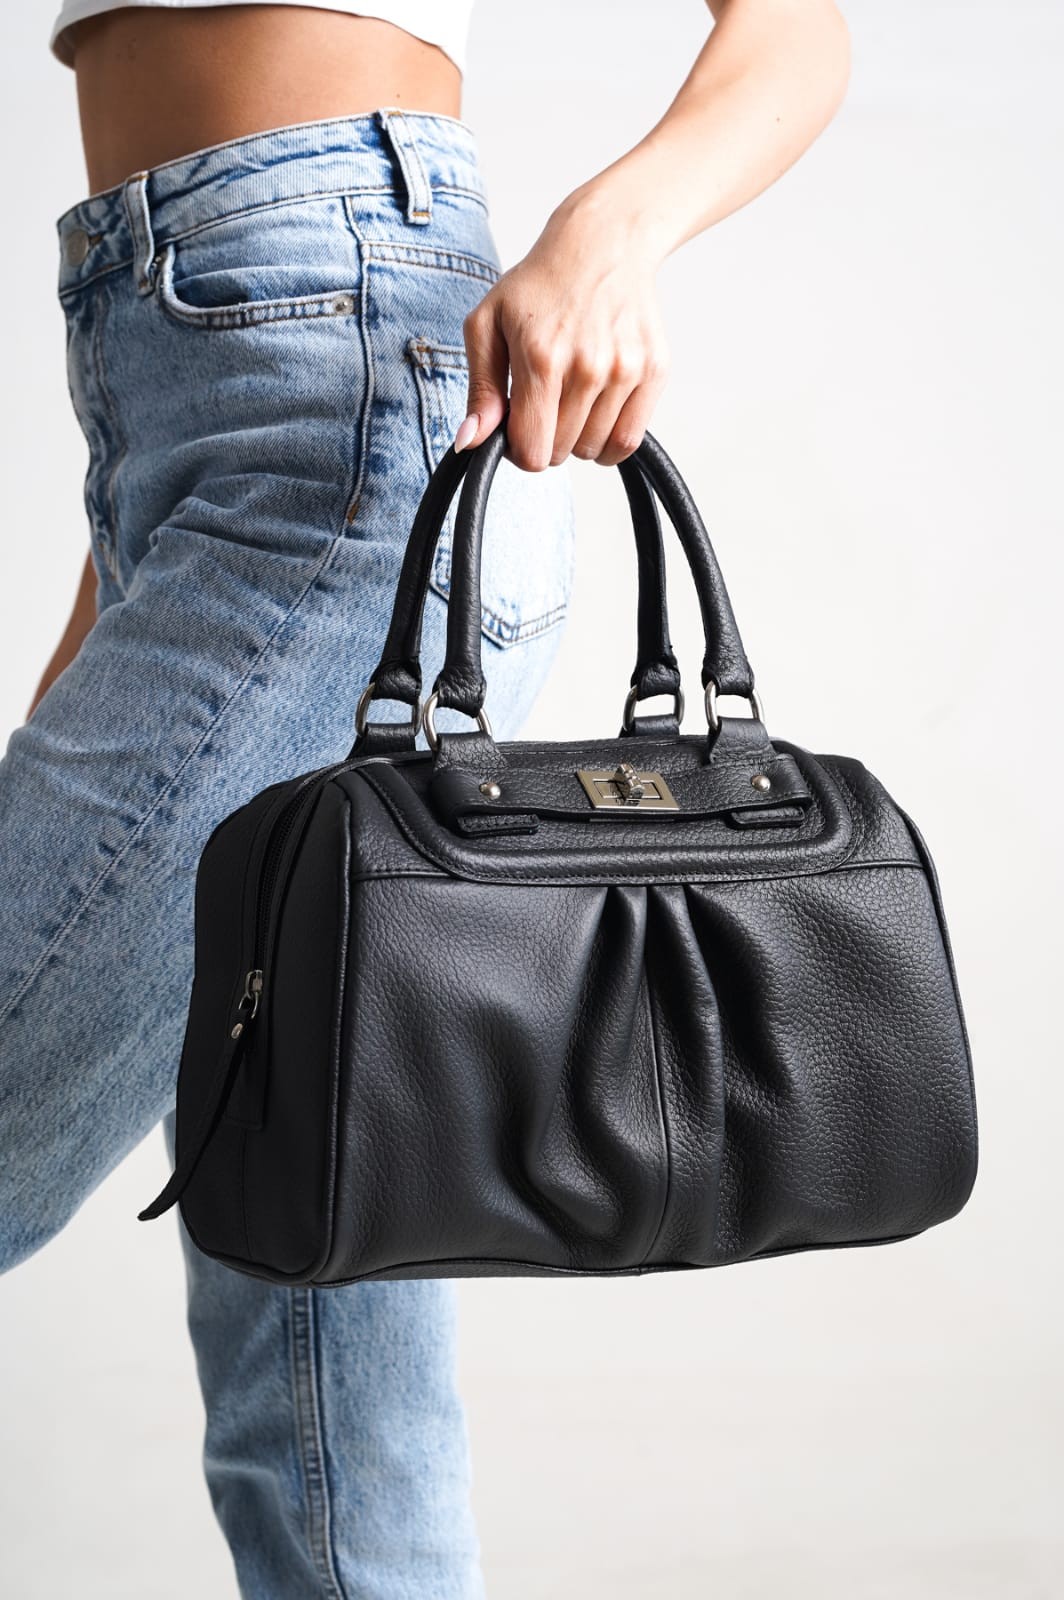 Kadın Hakiki Deri El Çantası Bavul Model - Siyah